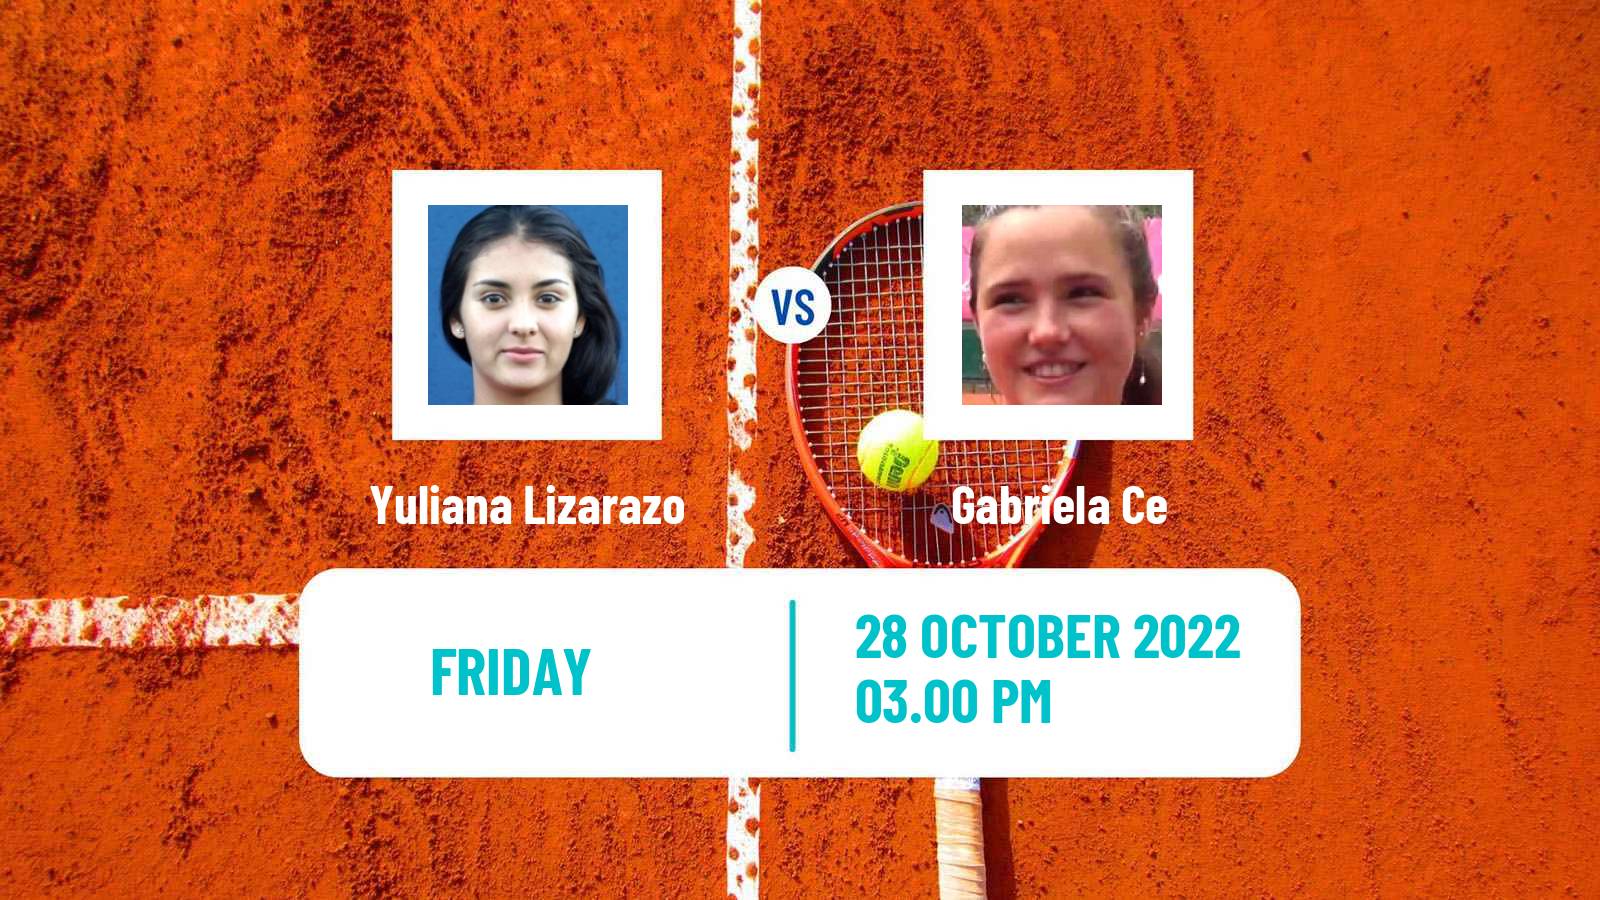 Tennis ITF Tournaments Yuliana Lizarazo - Gabriela Ce